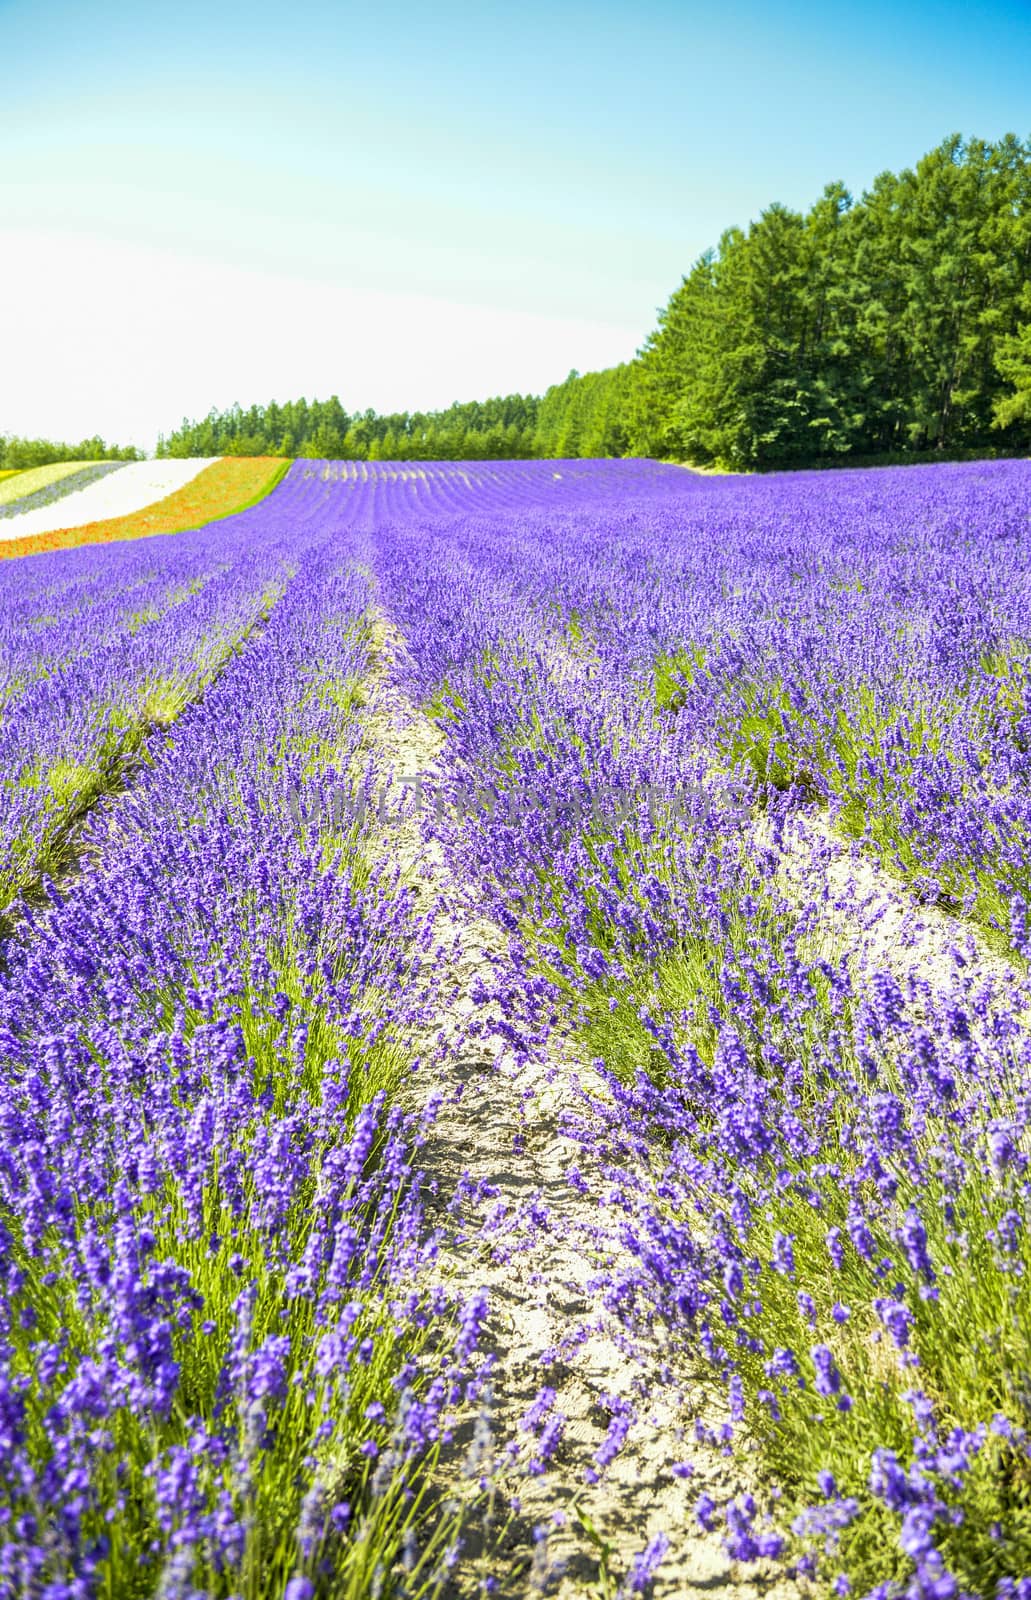 Lavender field in the row1 by gjeerawut